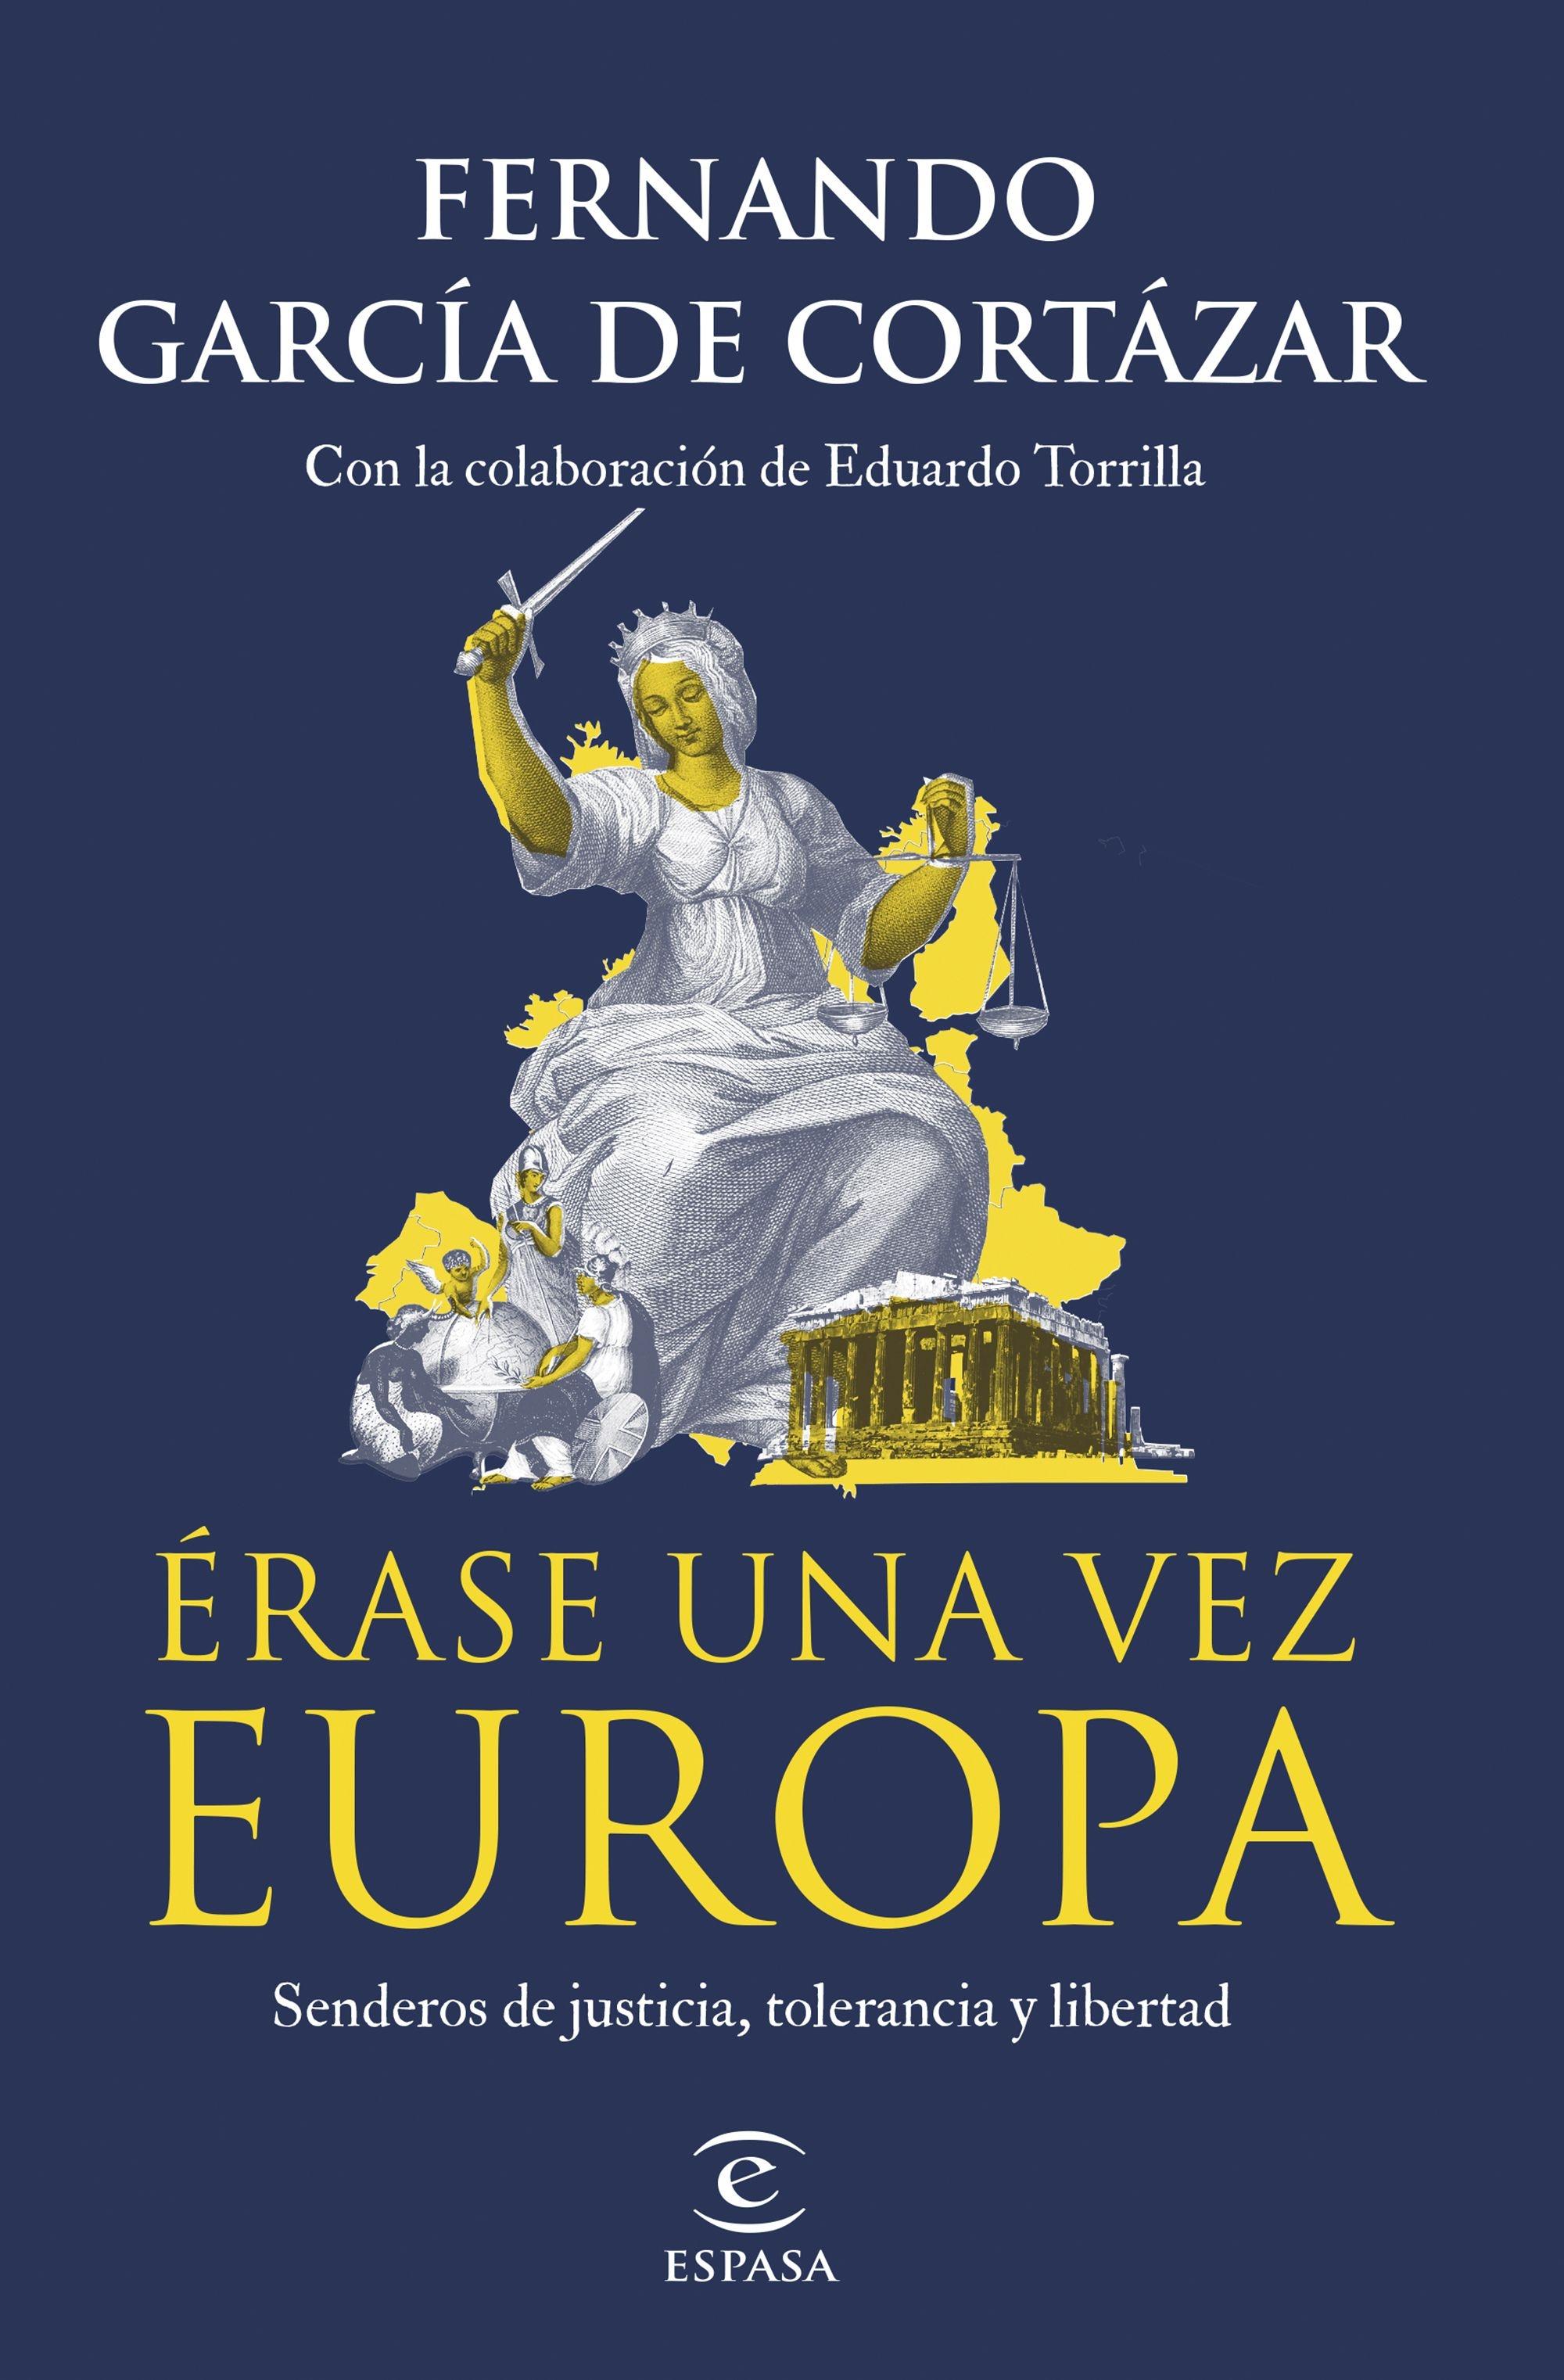 ERASE UNA VEZ EUROPA "SENDEROS DE JUSTICIA Y LIBERTAD". 